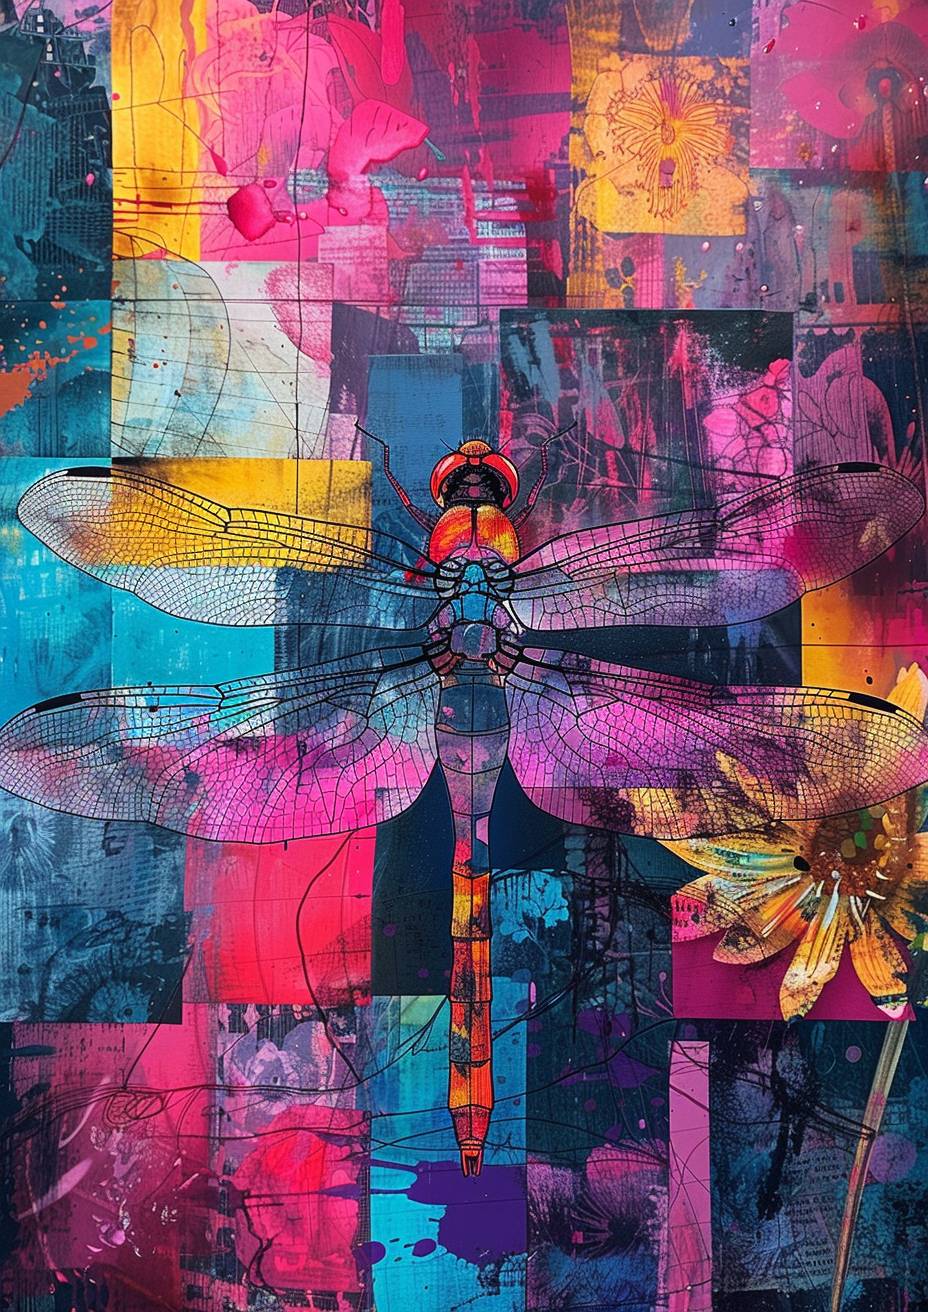 抽象的重ねられたシルクスクリーンプリント、池の上に水生植物が咲く中蜻蜓が寄るアップ、破片化された歪んだ長方形、活気のある色彩パレット、荒い質感、平面画像